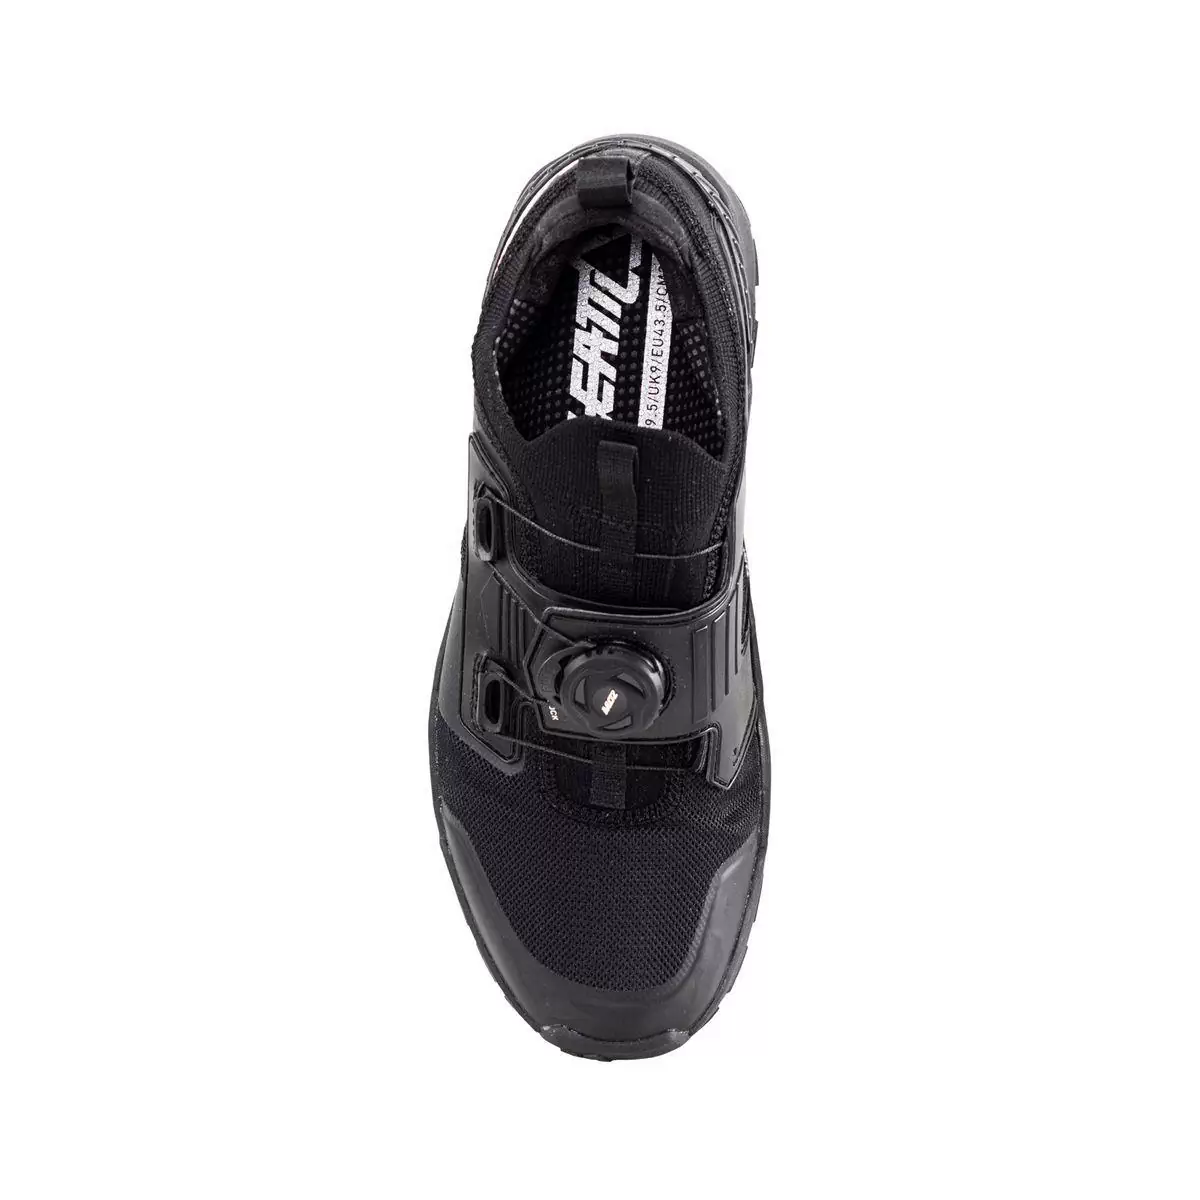 Chaussures VTT Pro Flat 2.0 noir taille 38,5 #3